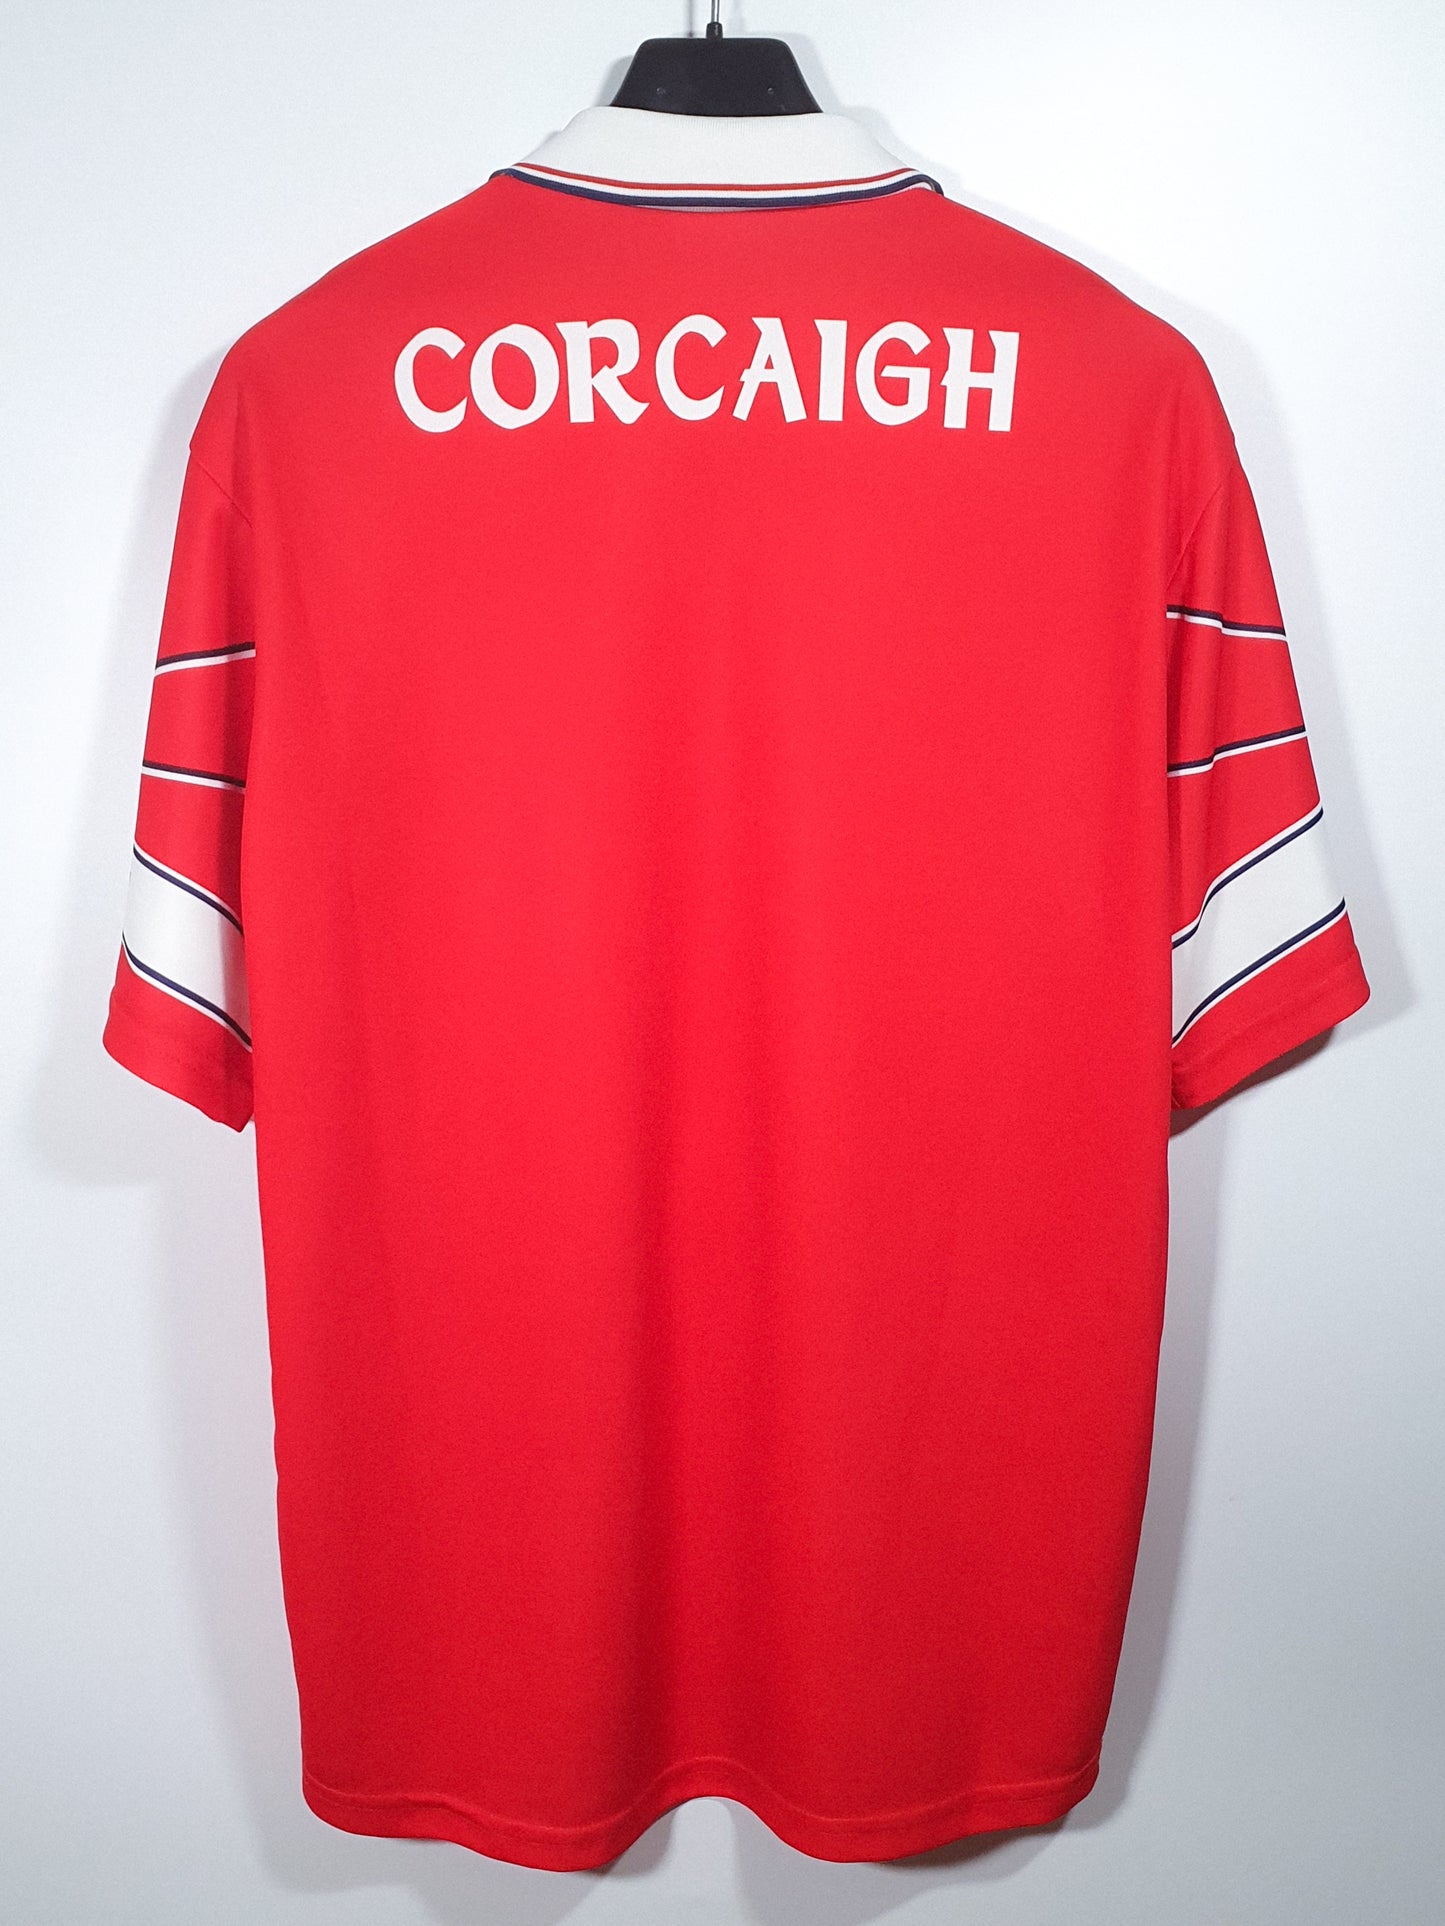 Cork 2000 (S)